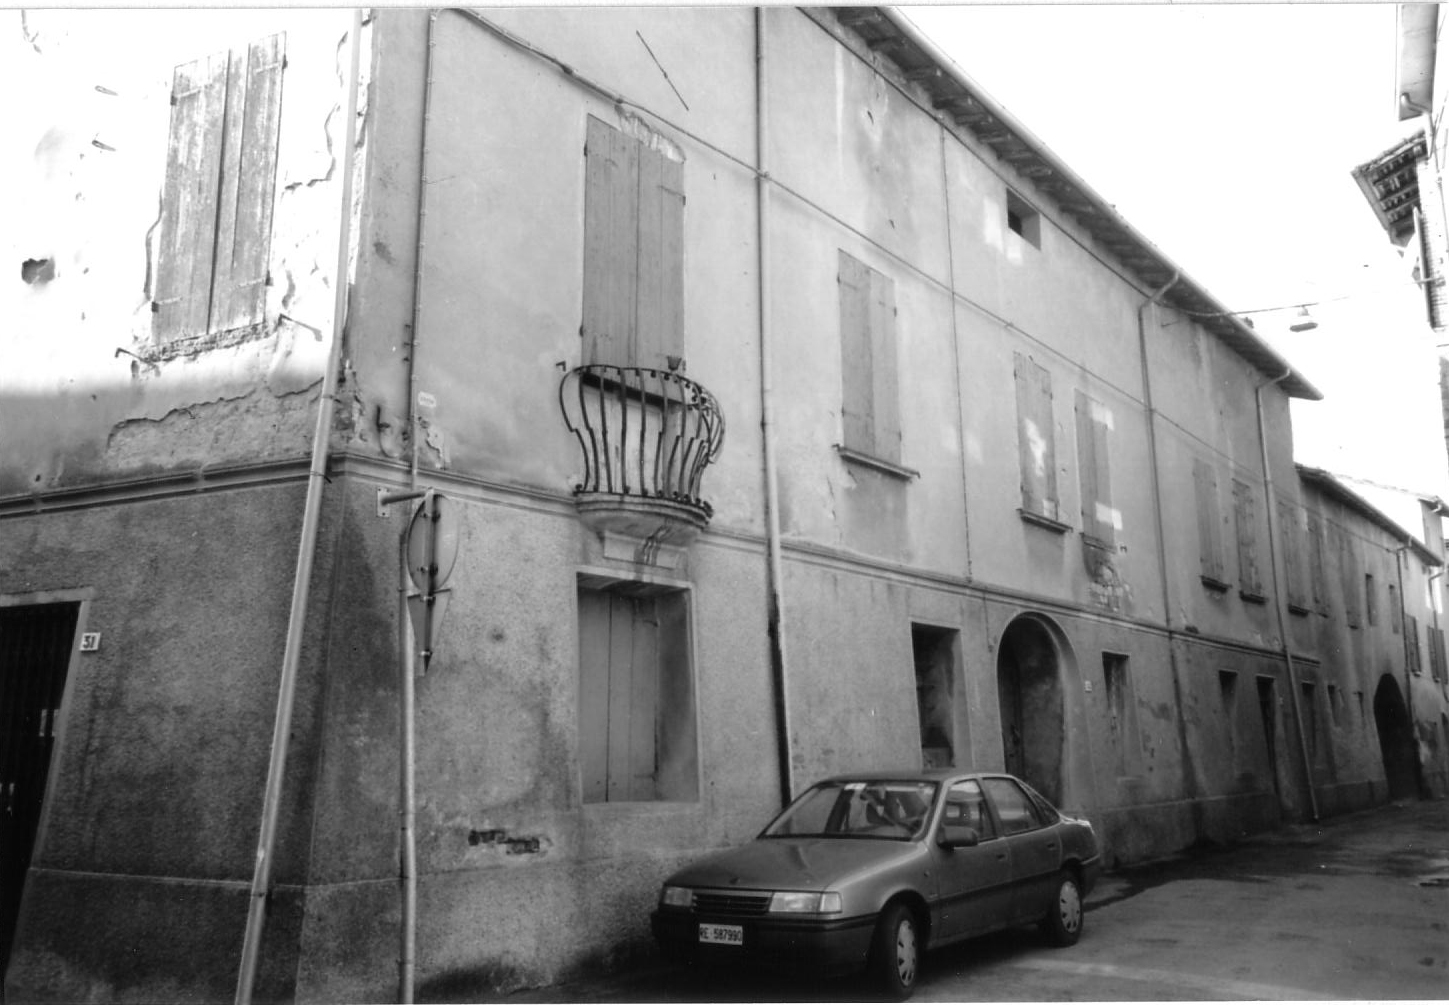 Casa Cantoni (casa, signorile) - Montecchio Emilia (RE)  (sec. XV, metà)